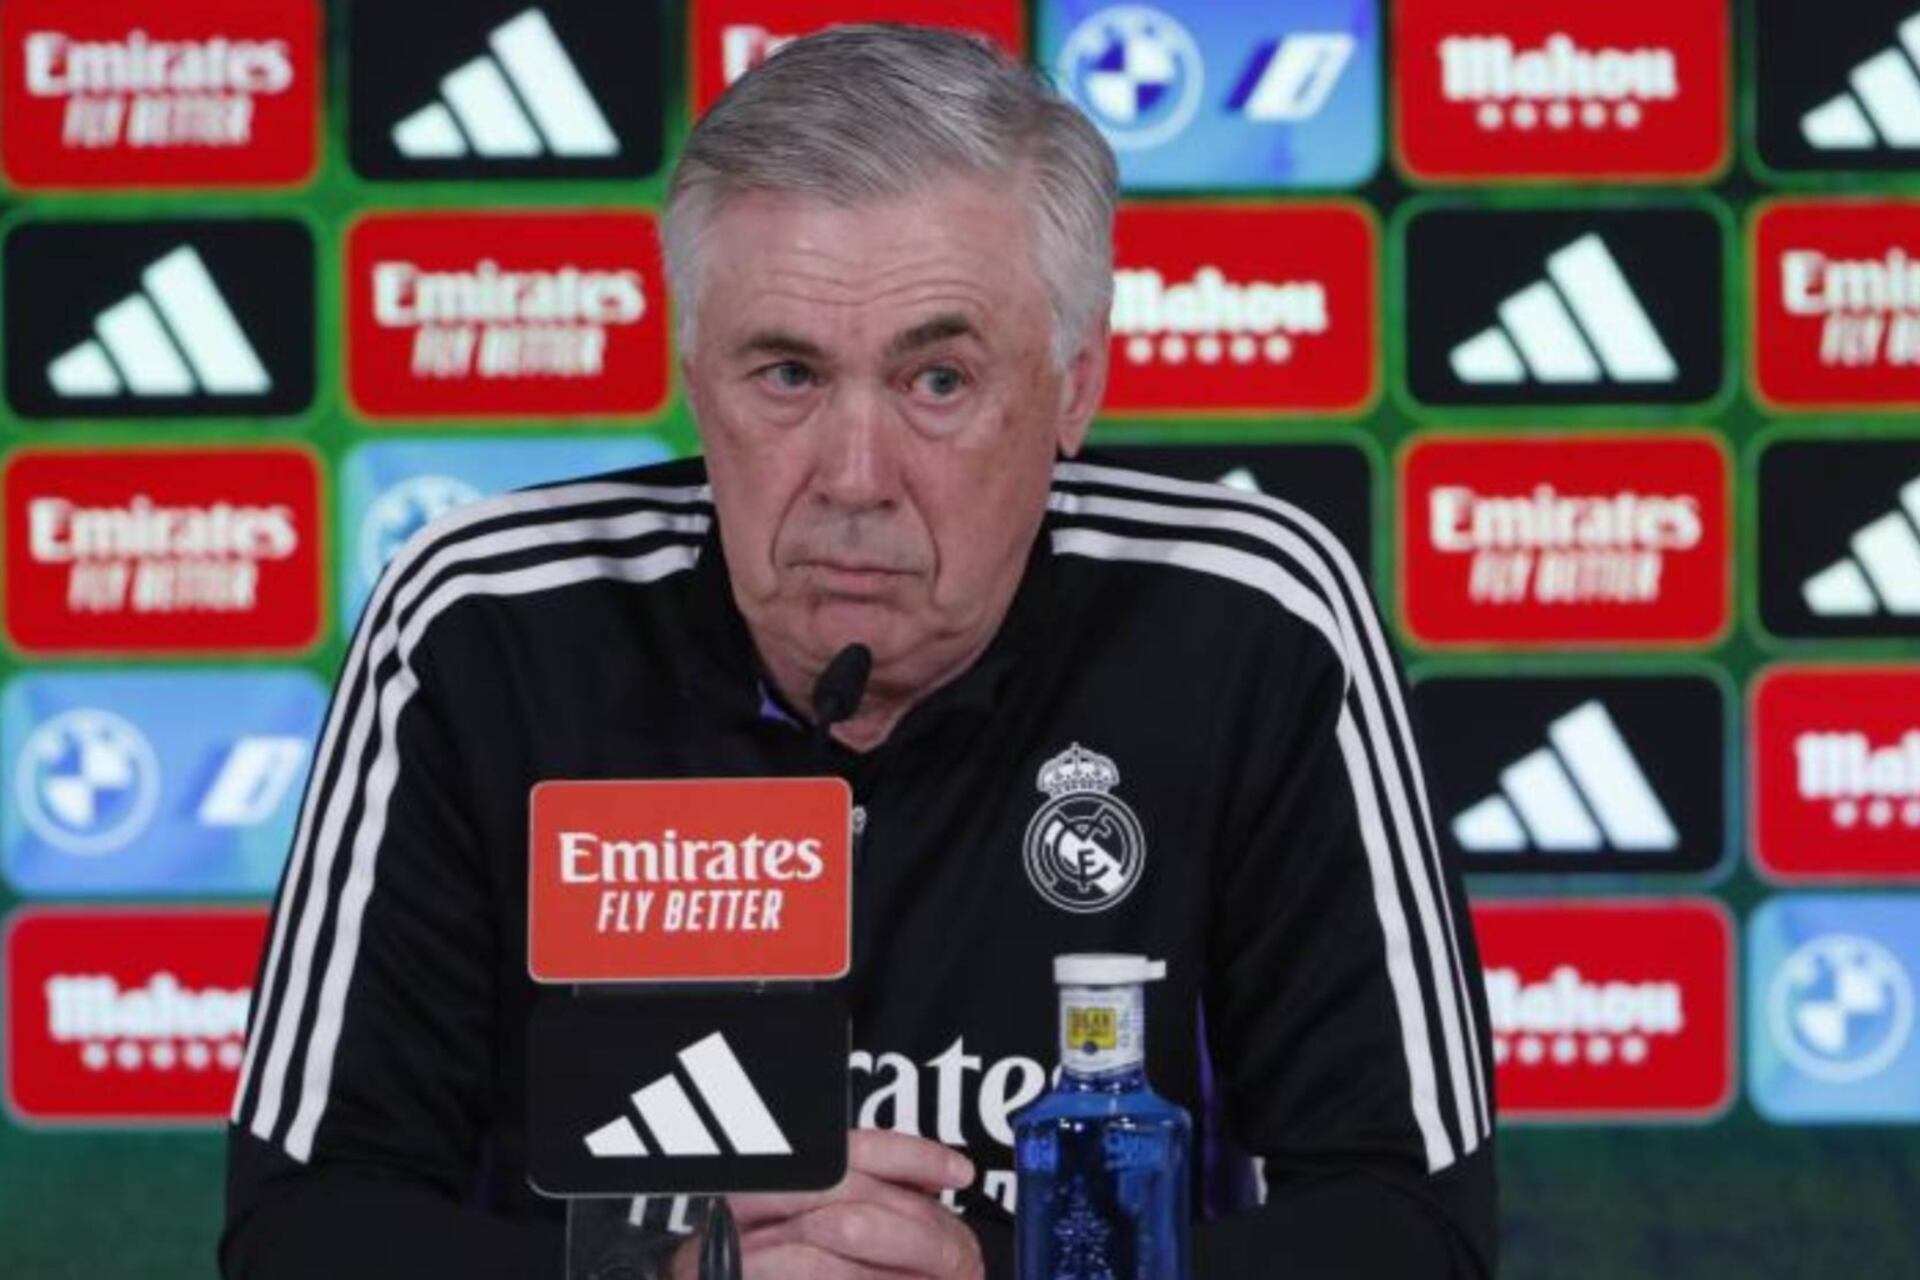 Mira lo que le dijo el árbitro del Madrid vs Vallecano a Ancelotti para calmarlo